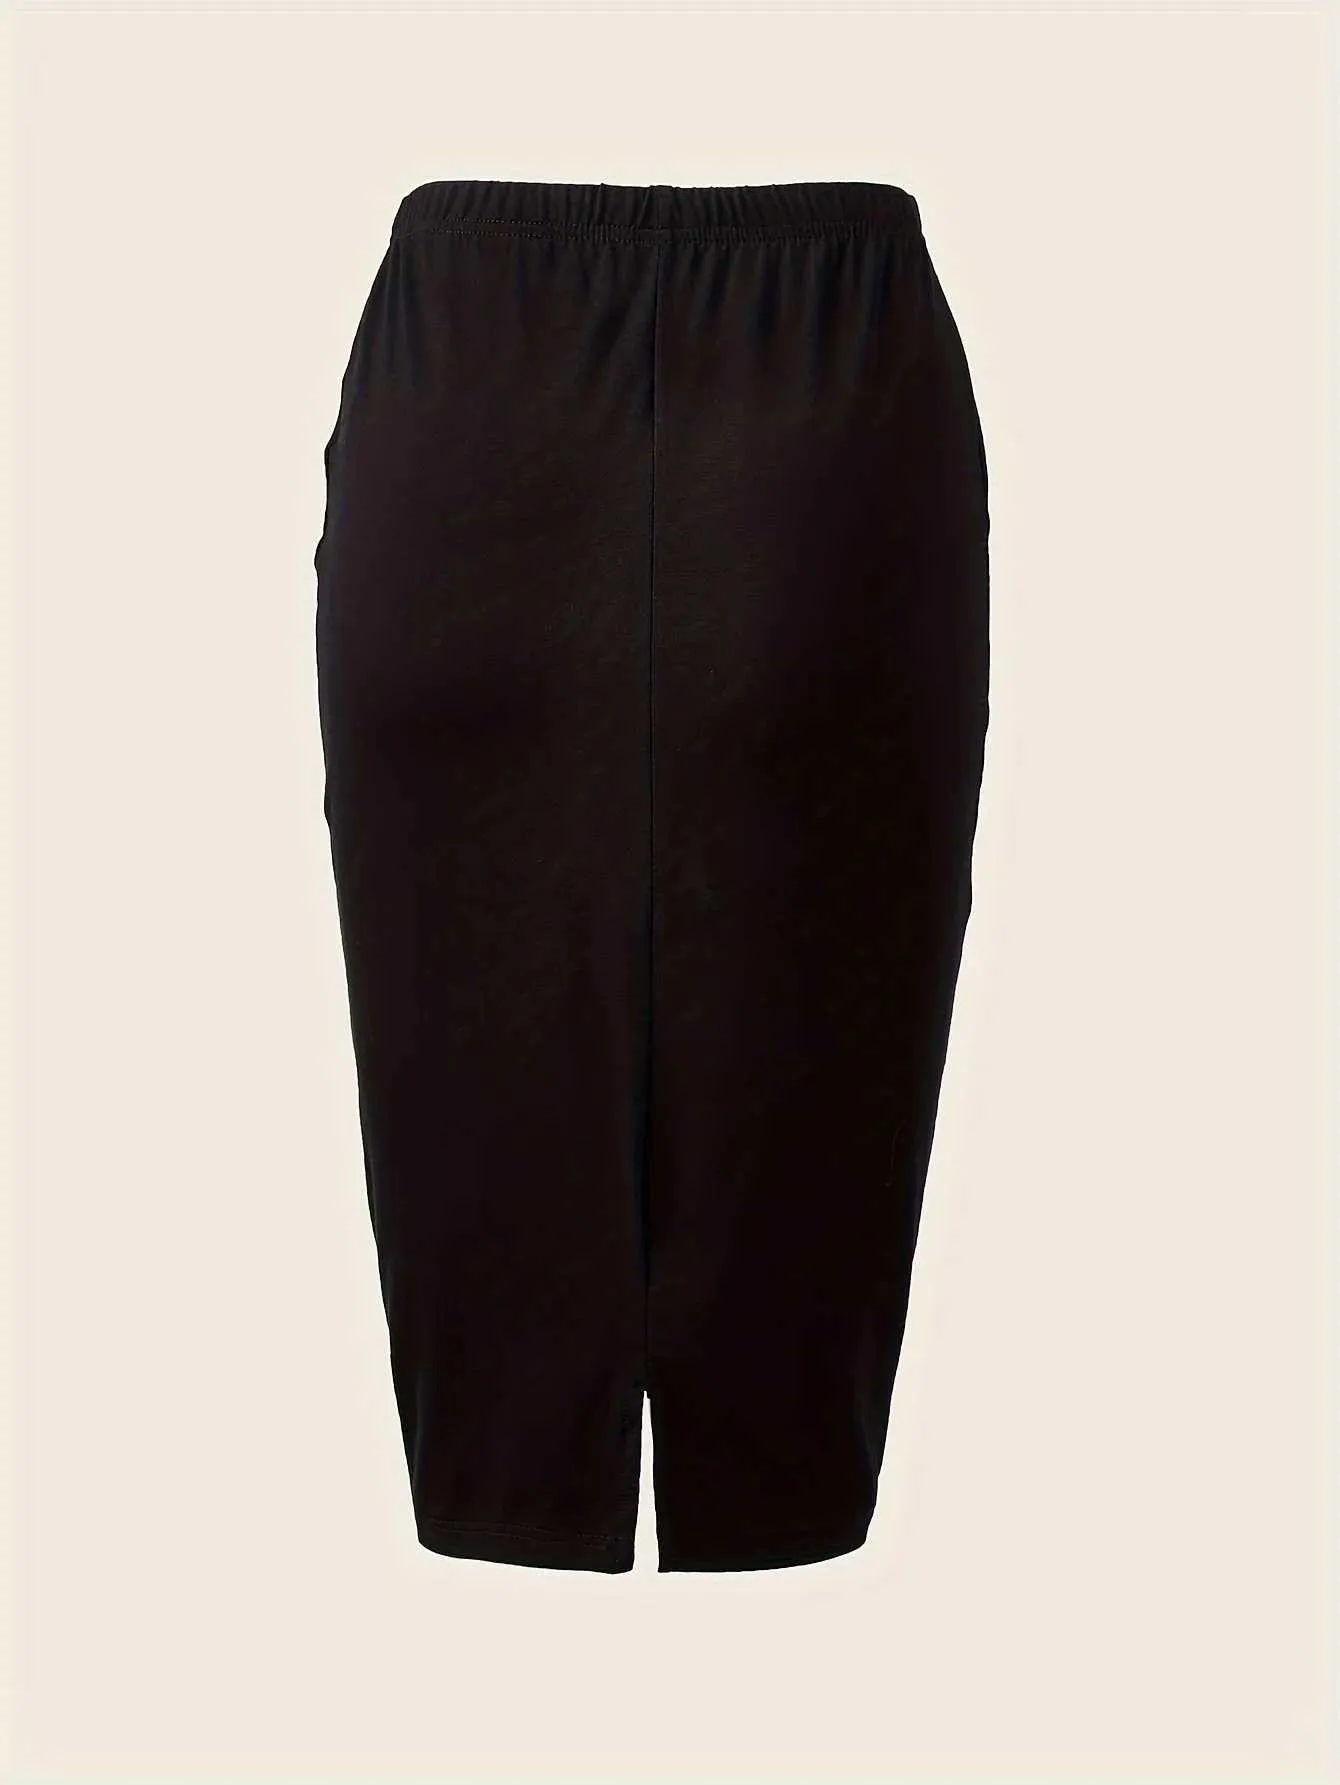 Röcke eleganter Rock mit hoher Taille mit Röcken mit der Rückenlüftung von Frauen - geeignet für Frühling/Sommer FashionL2429